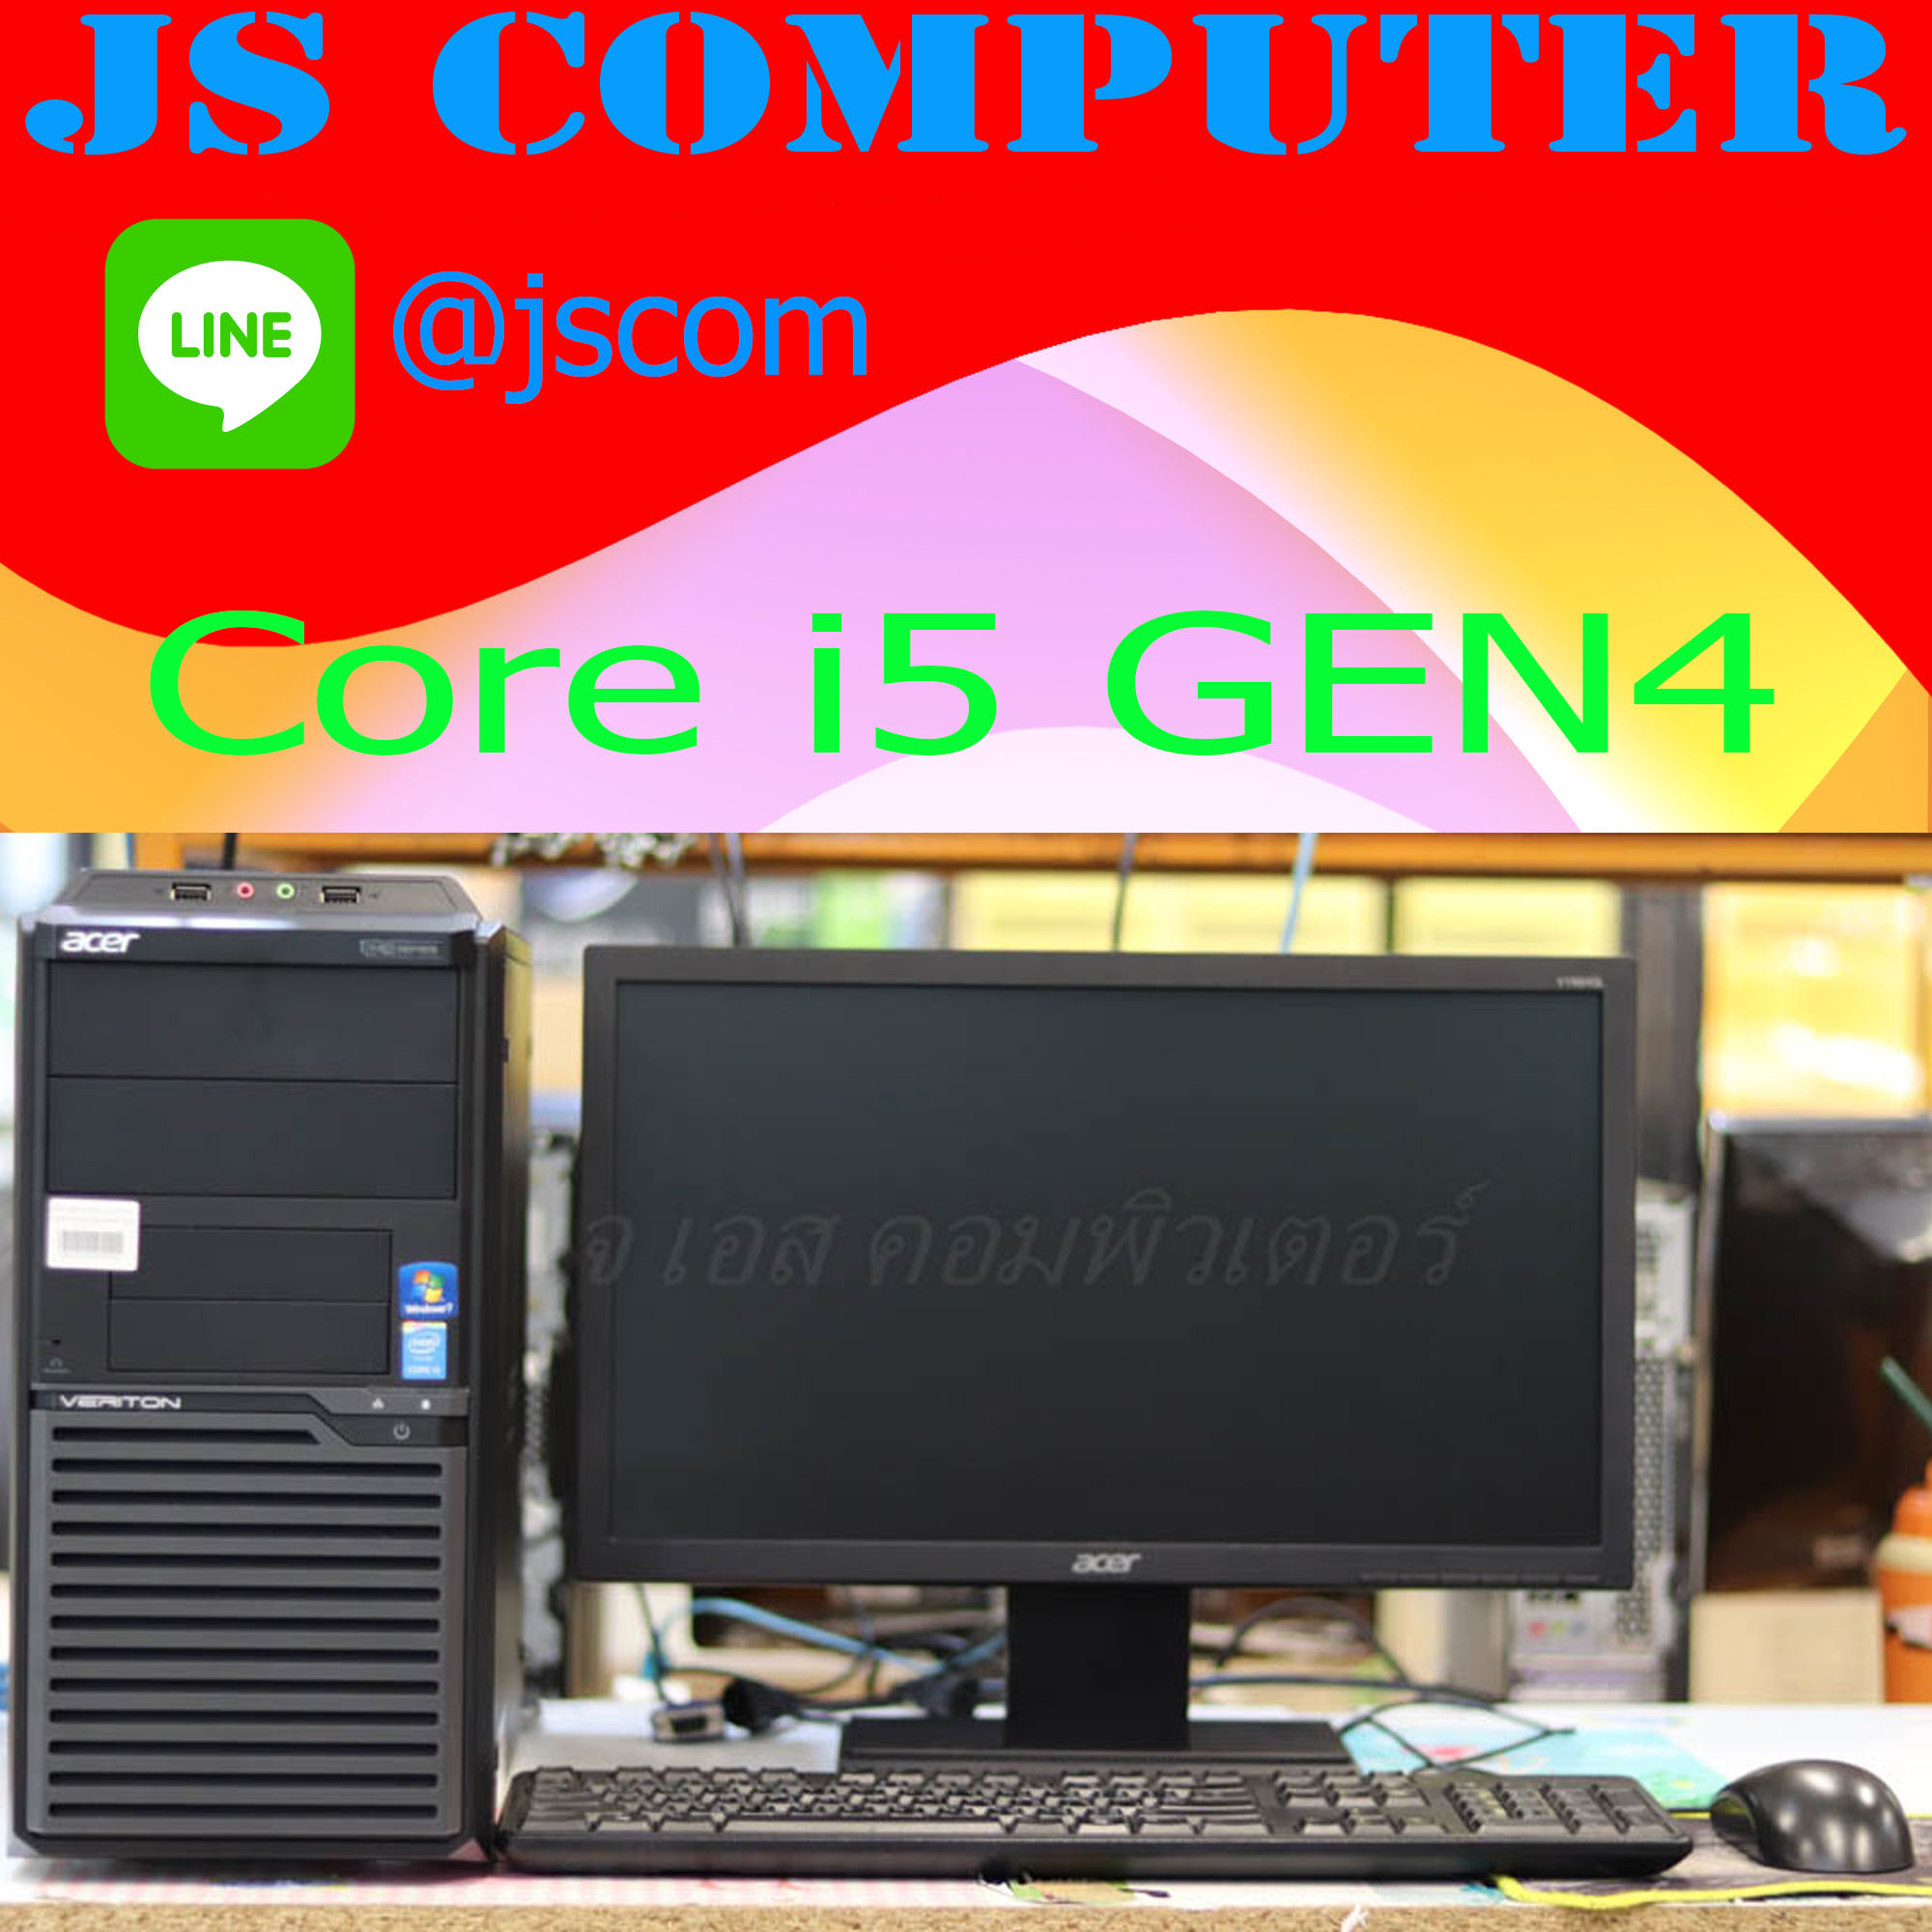 คอมพิวเตอร์ตั้งโต๊ะ พร้อมใช้งาน acer M2630G Core i5 GEN4 เคสตั้ง พร้อมจอ 19 นิ้ว